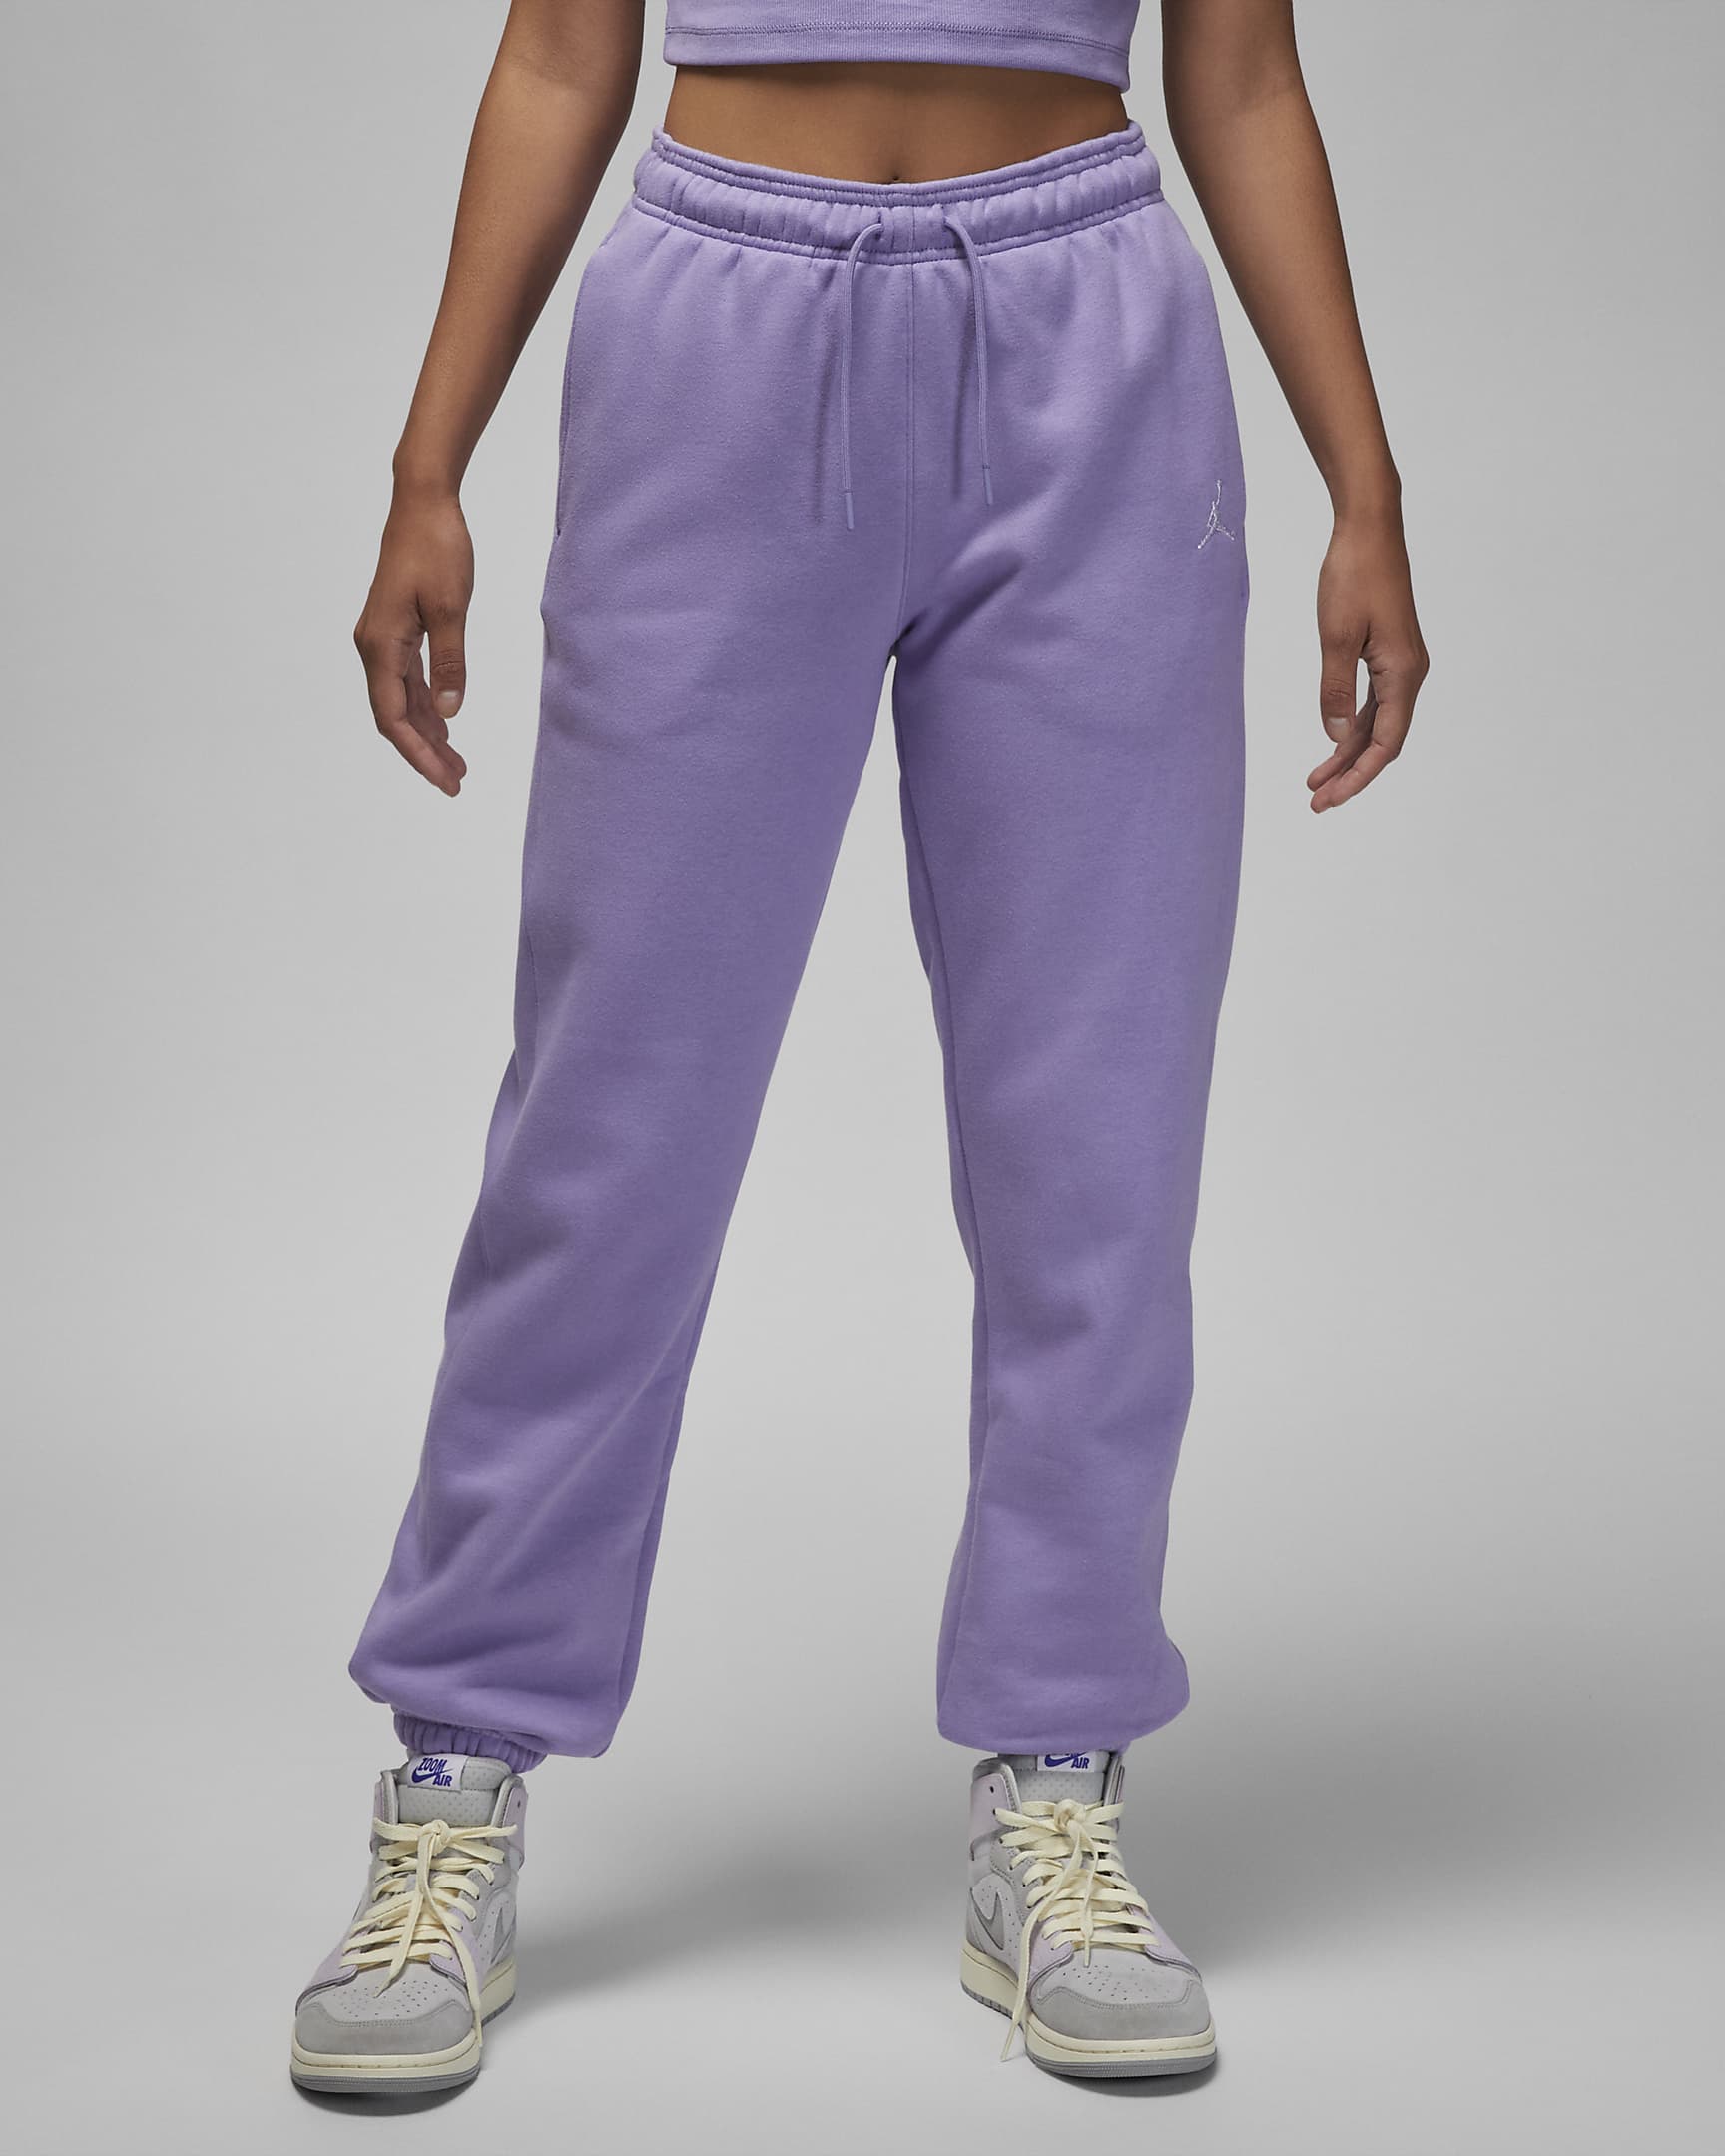 Jordan Brooklyn Fleece Women's Trousers. Nike DK